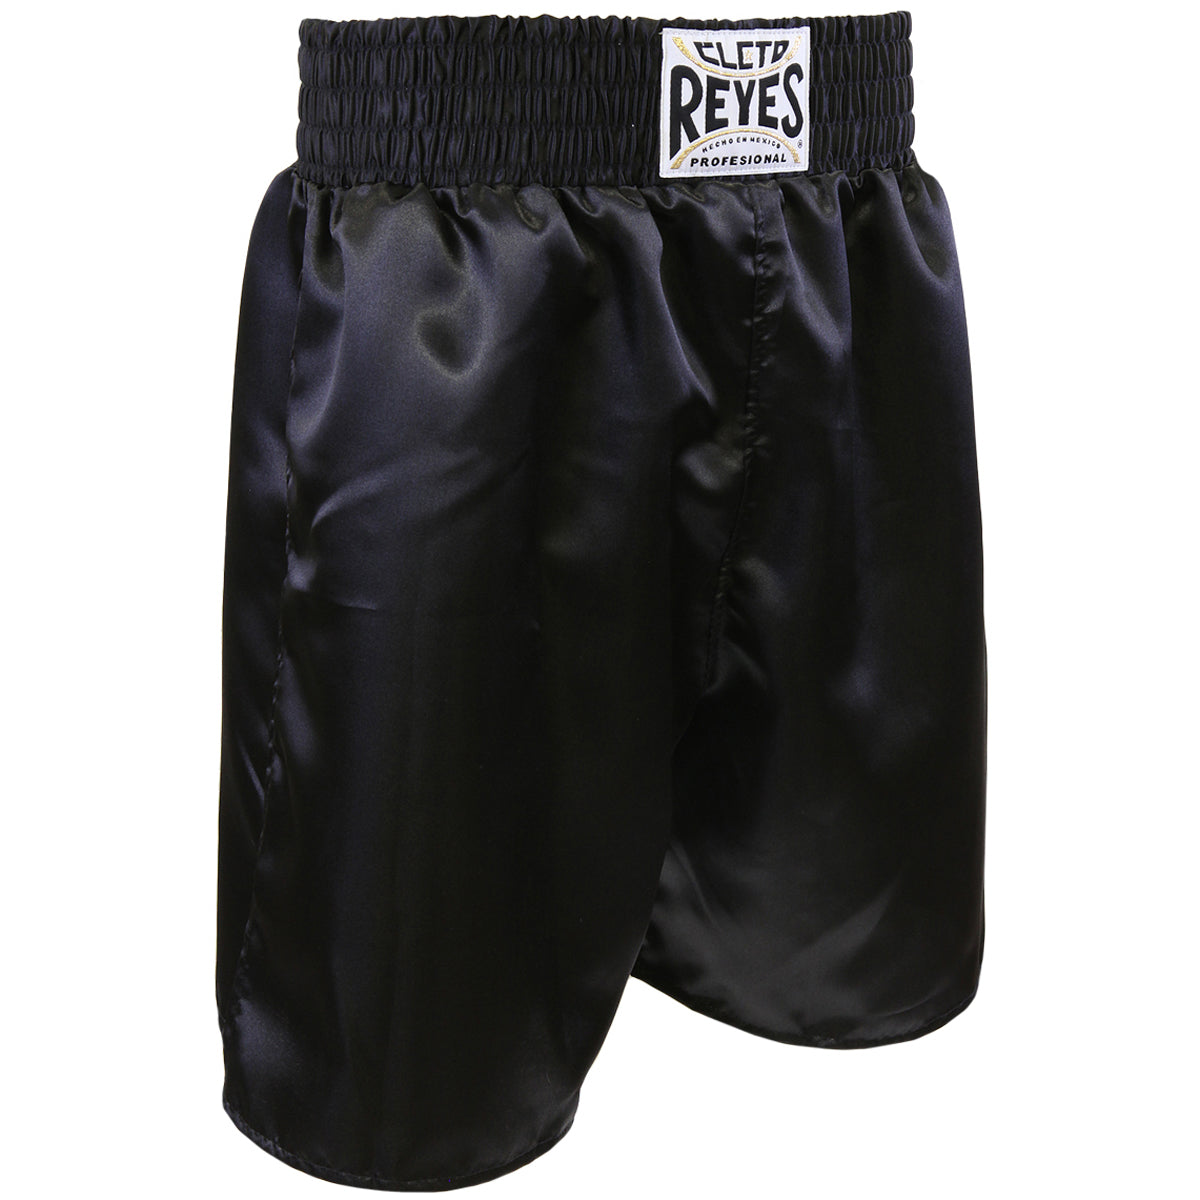 Cleto Reyes Satin Classic Boxing Trunks - XL (44") - Black Cleto Reyes